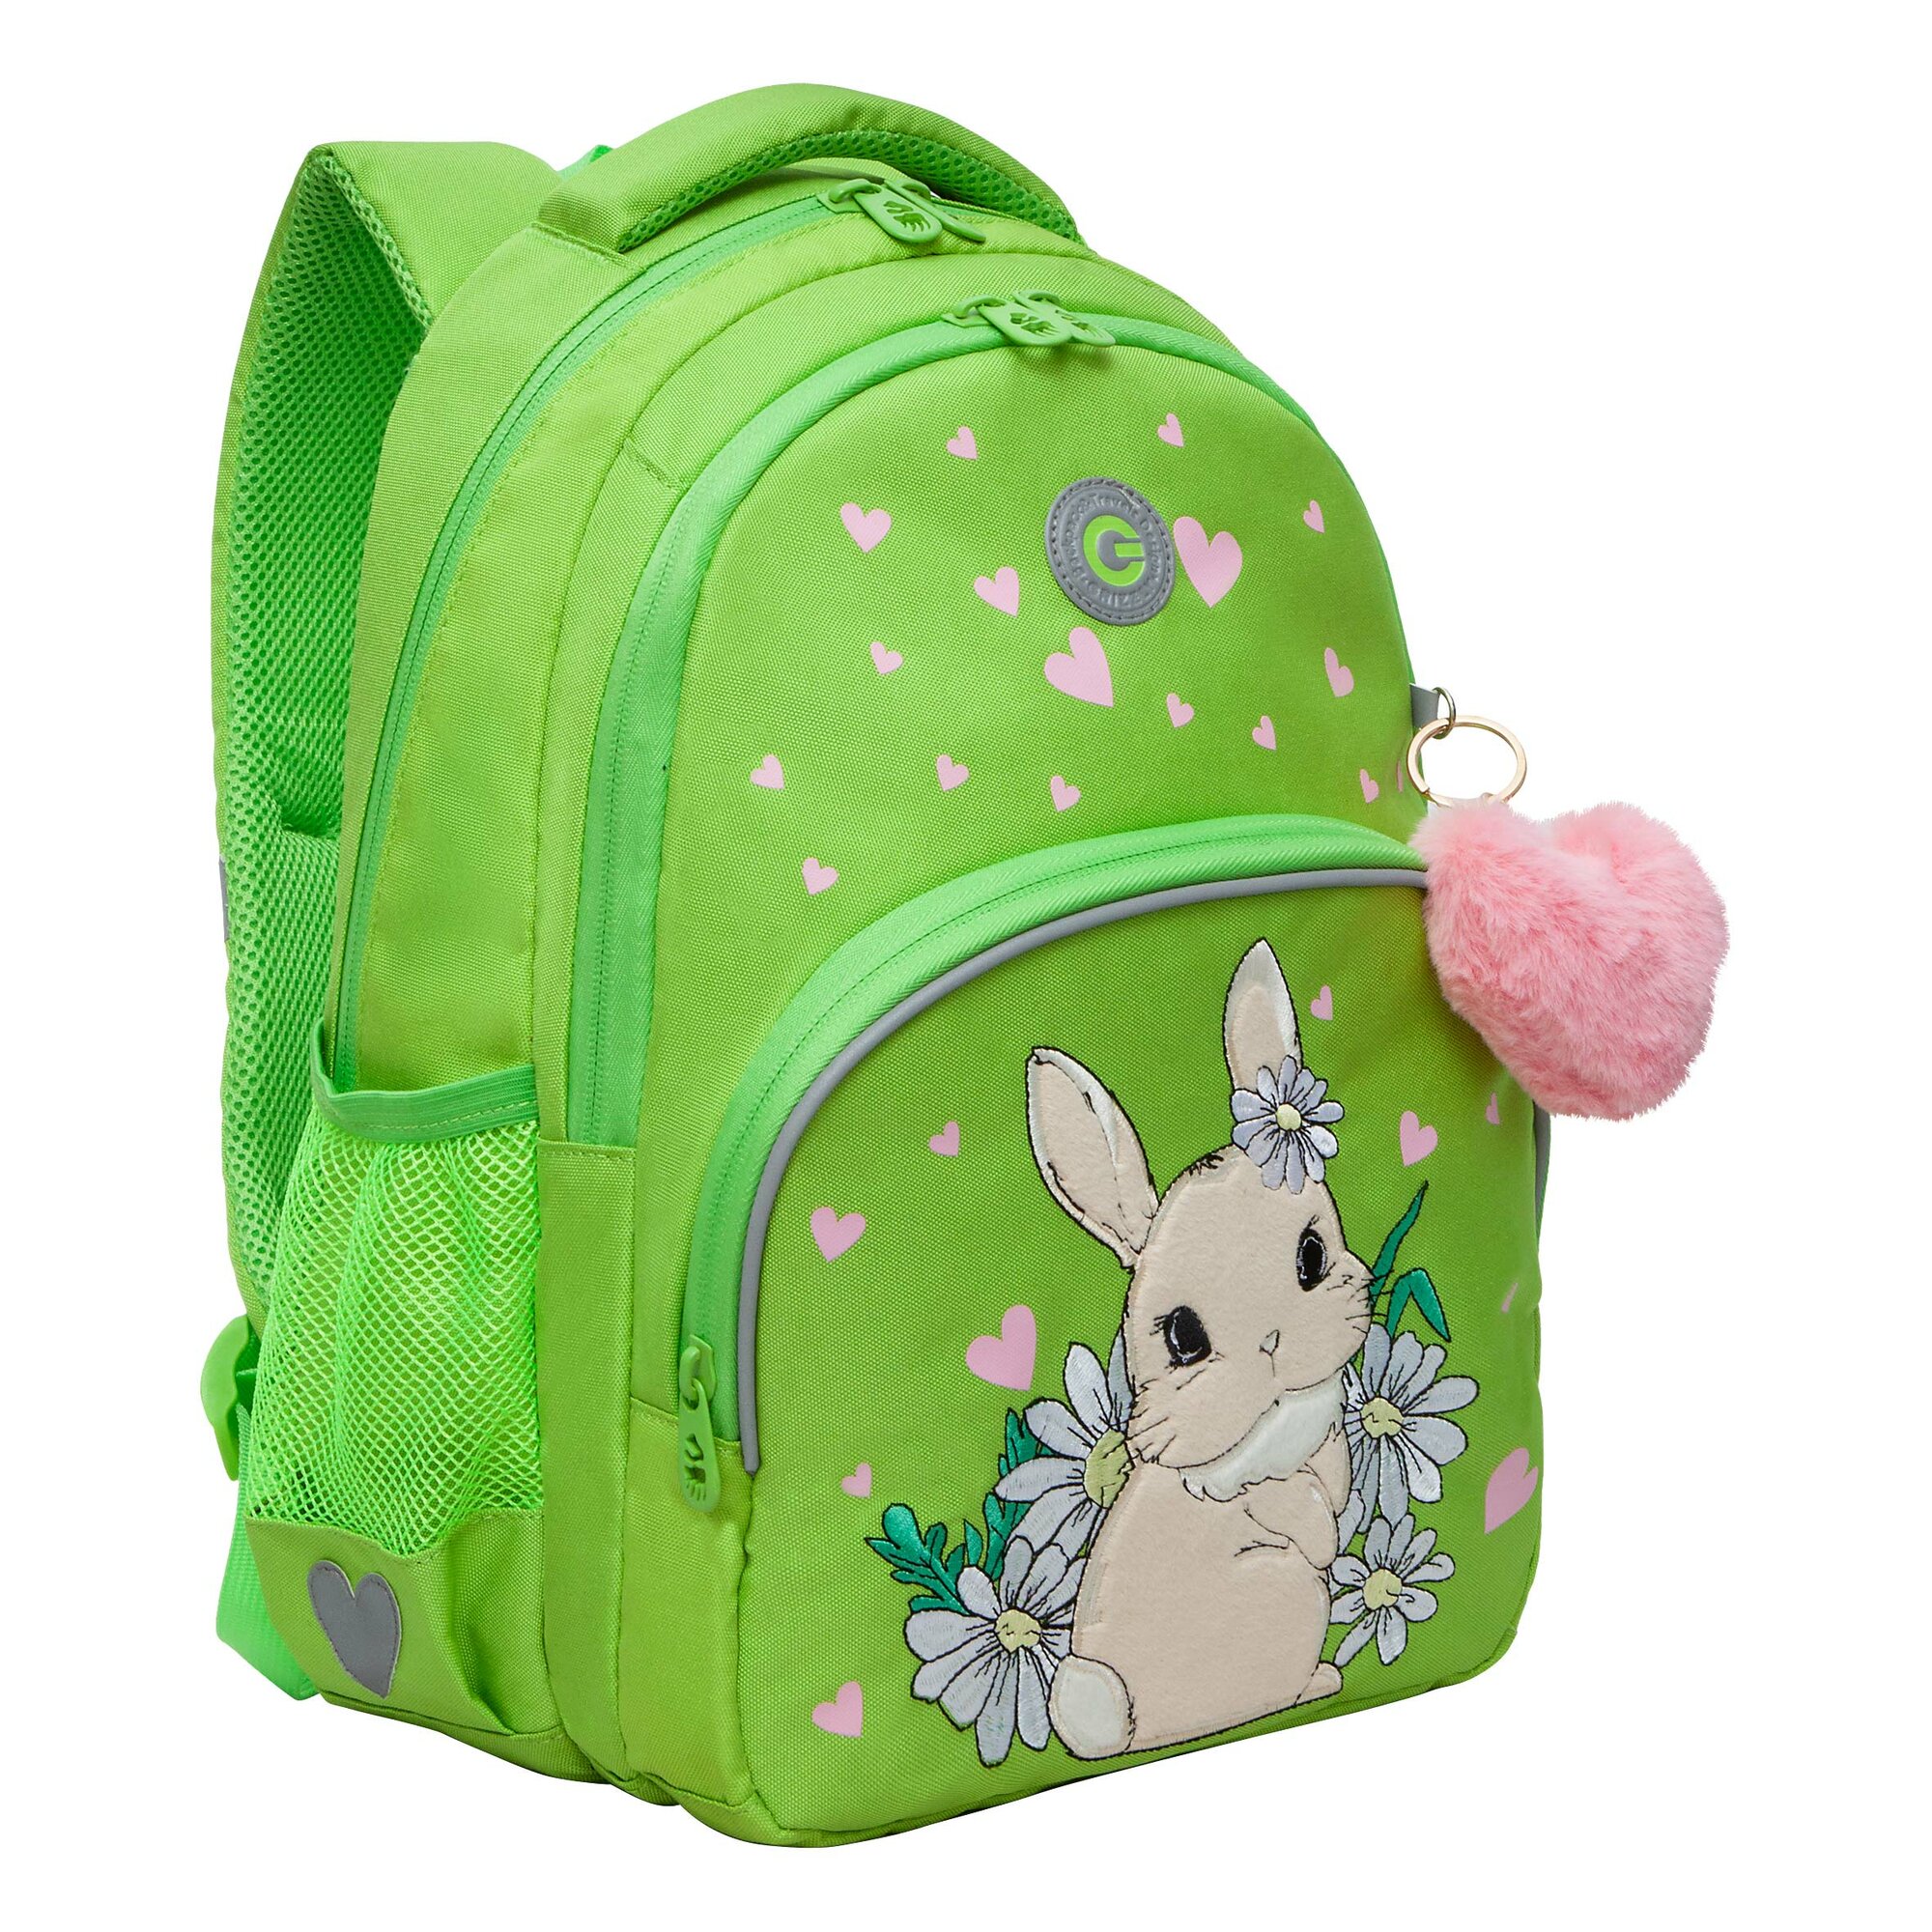 Рюкзак школьный GRIZZLY с карманом для ноутбука 13", анатомической спинкой, для девочки RG-360-3/3